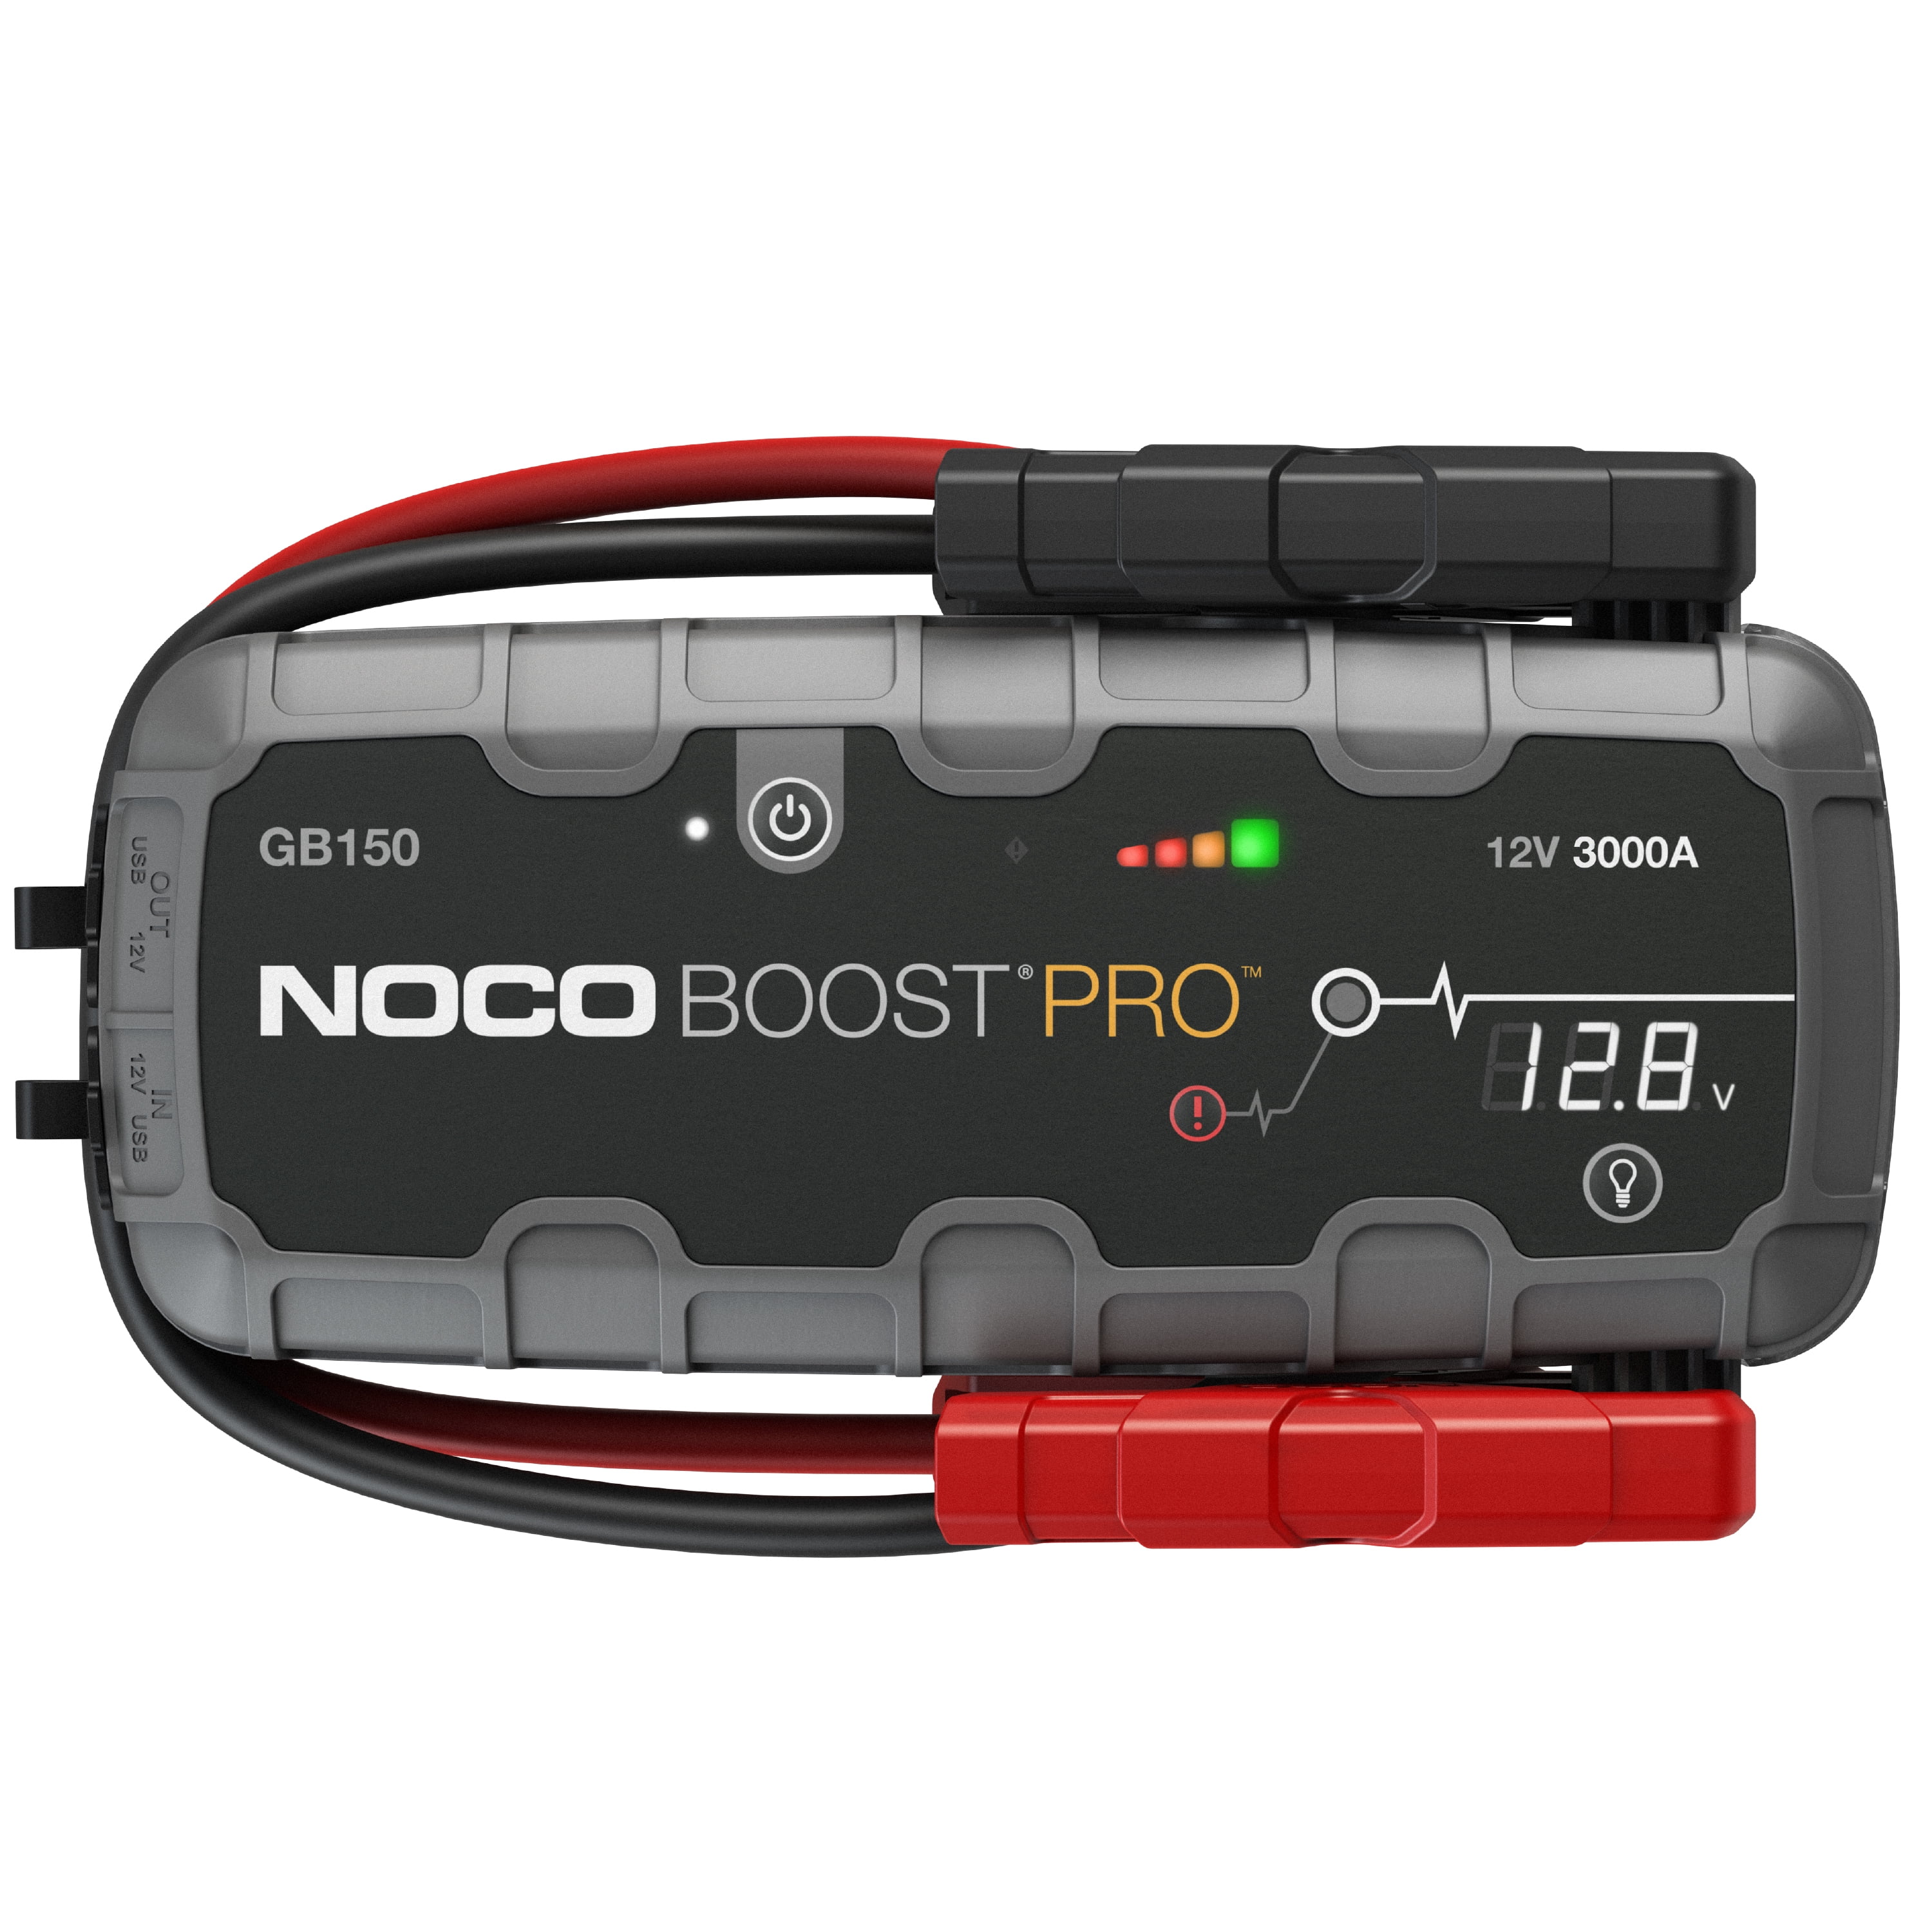 Produkt des Monats: Noco Boost Pro GB150 – Strom für den Notfall